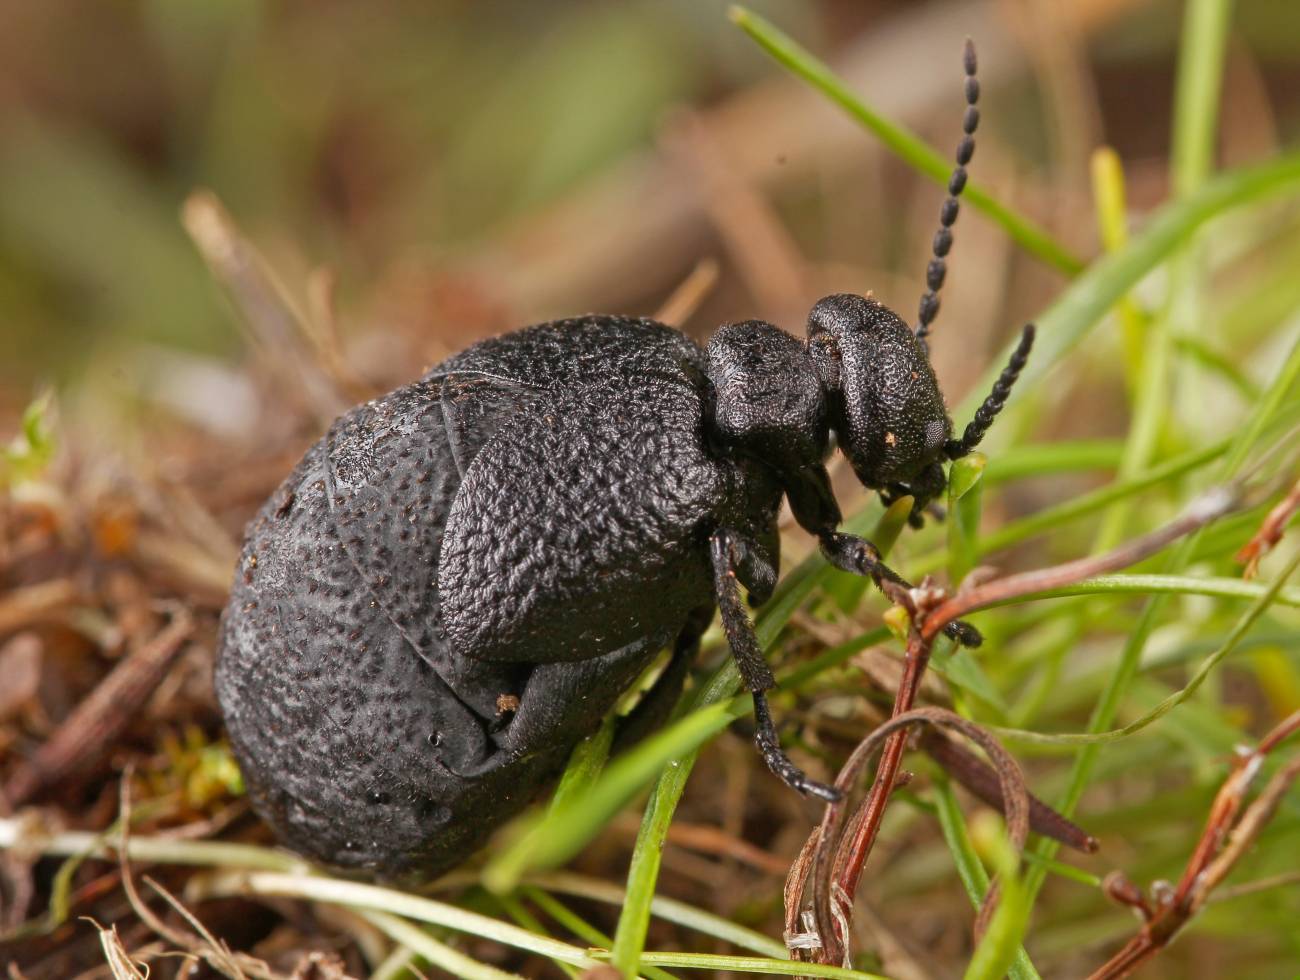 Descubren una especie nueva de escarabajo en el centro de Espana